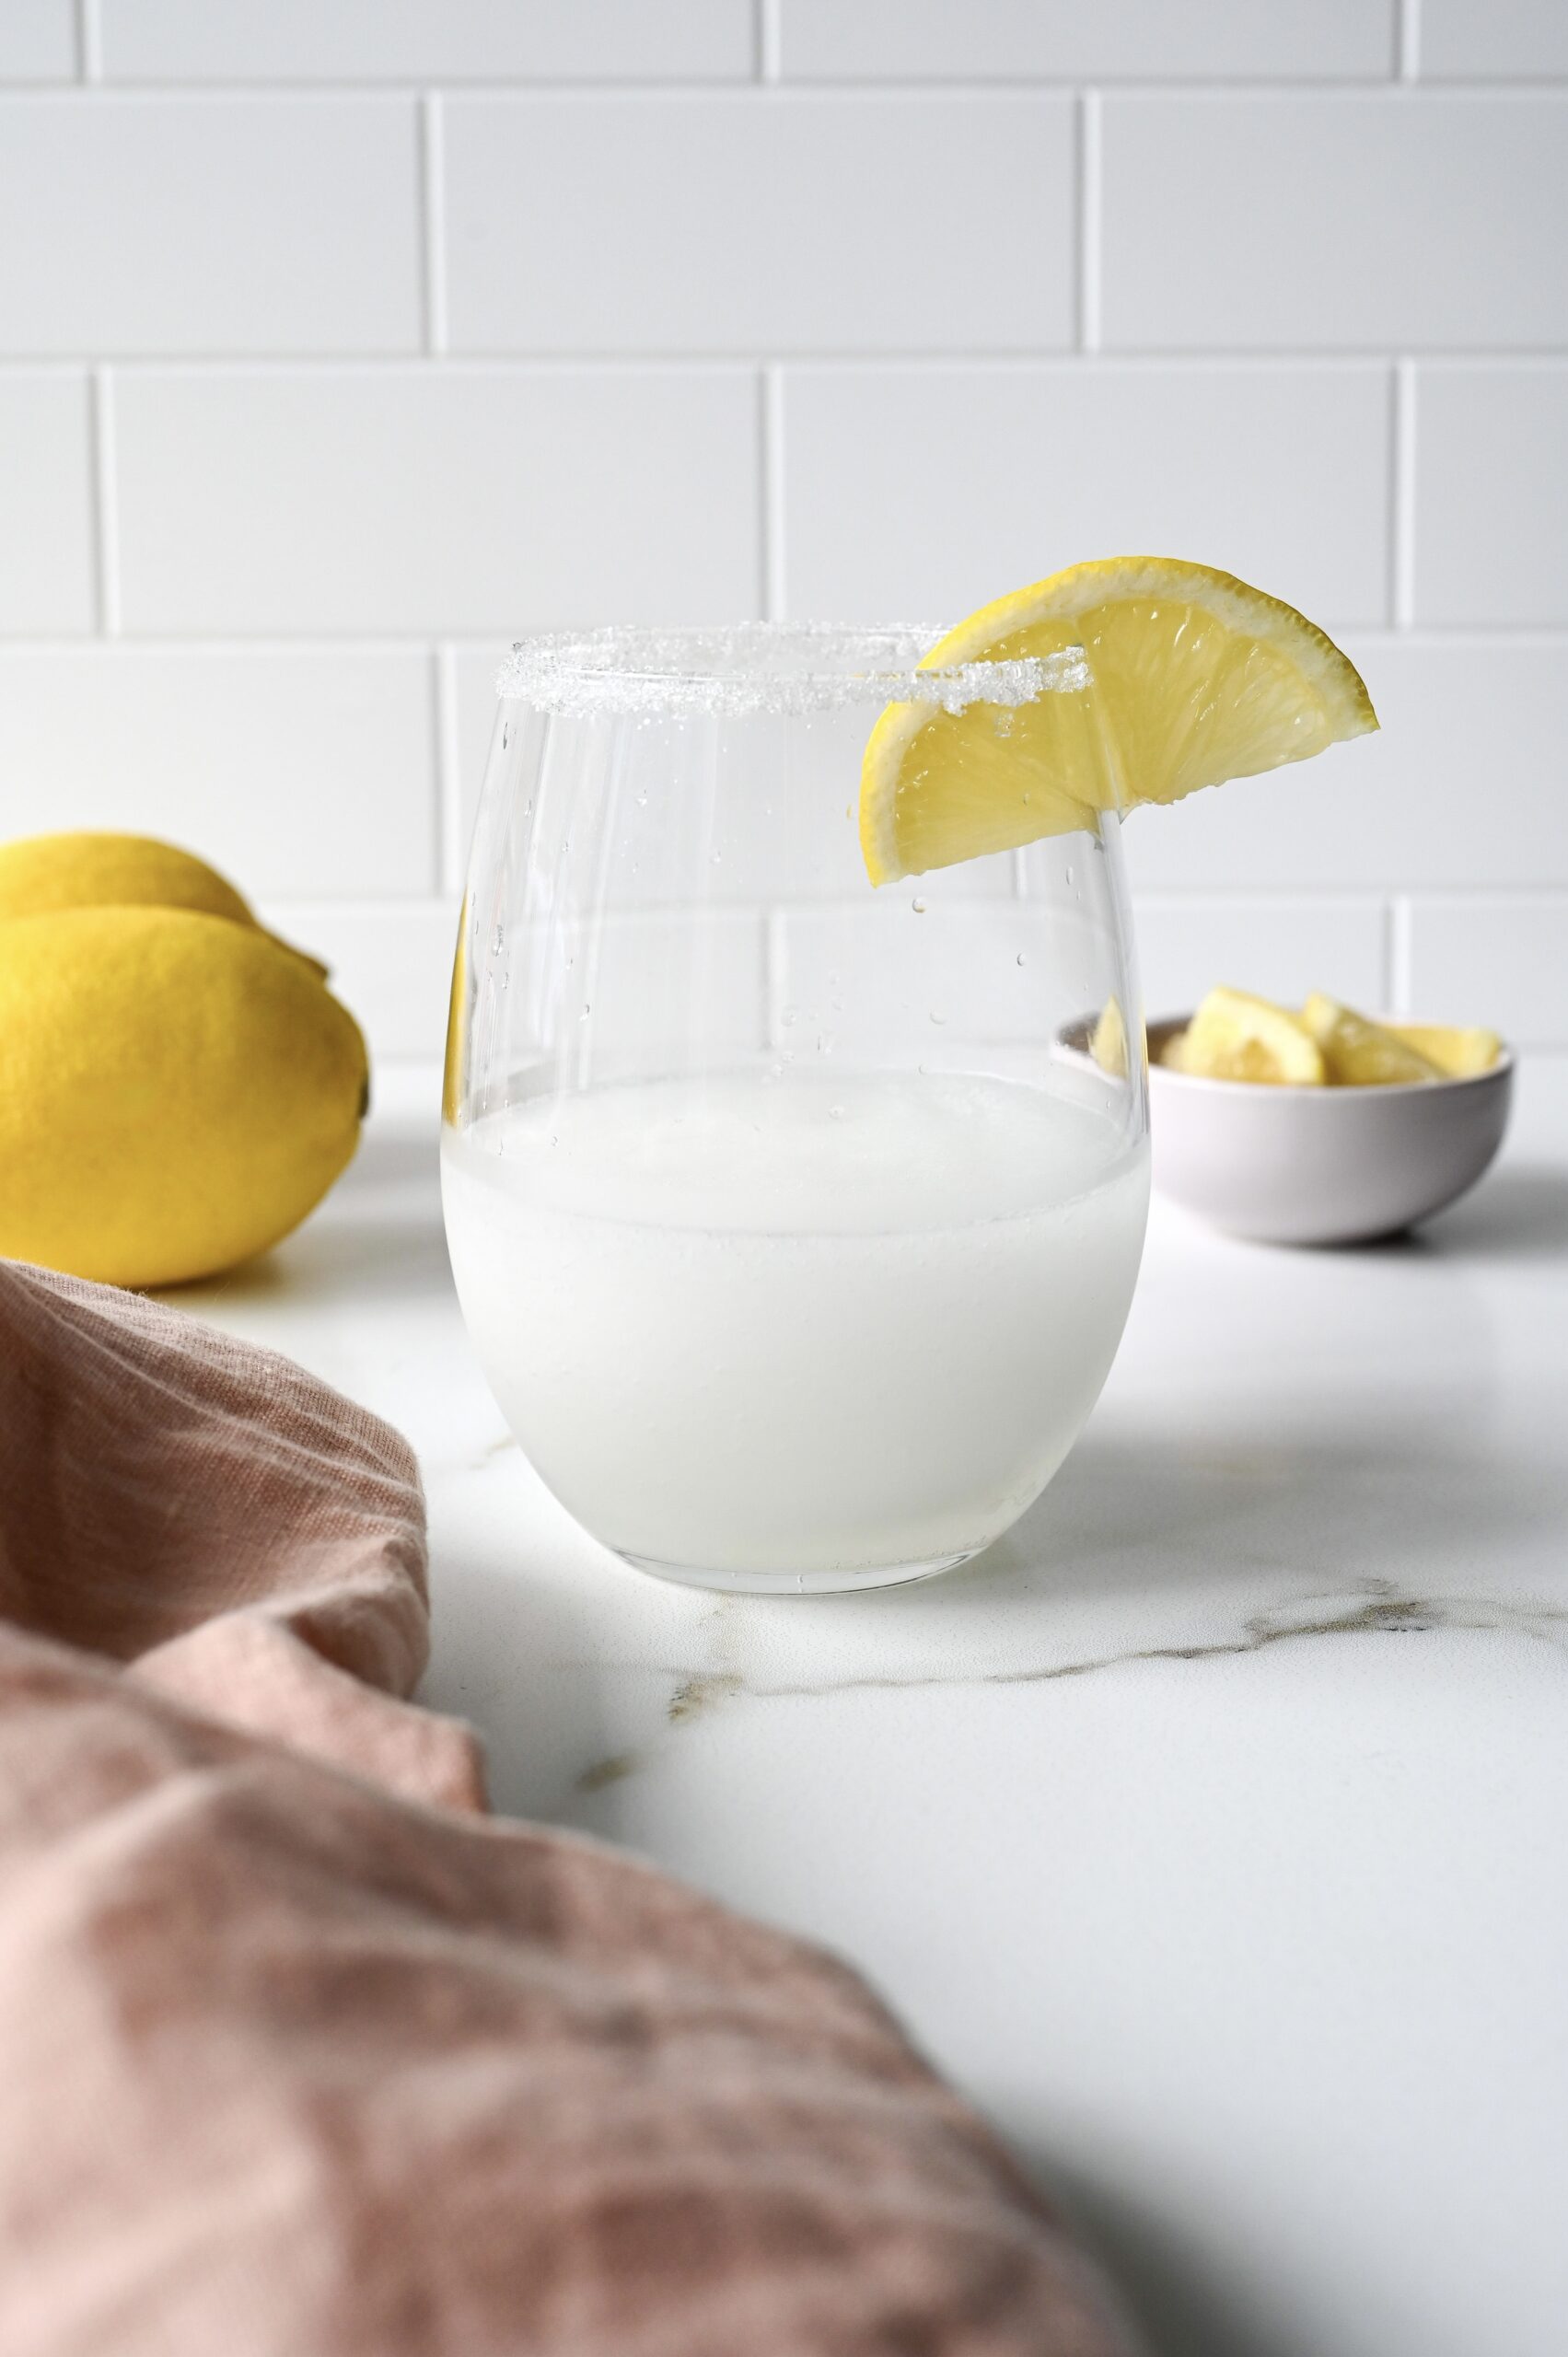 Ouzo lemonade slushie (Slushy cocktail)